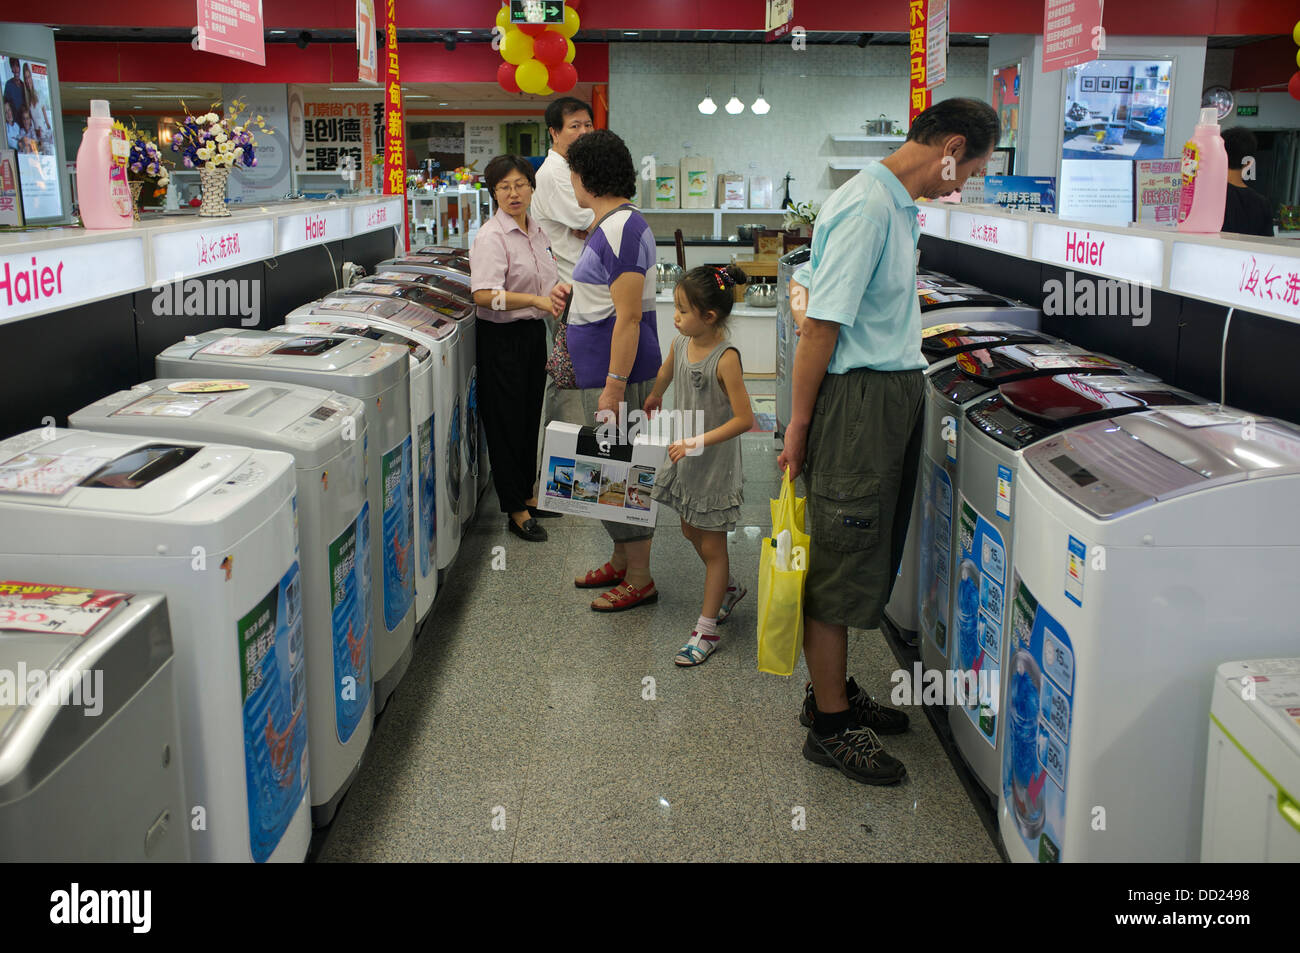 Haier Waschmaschinen stehen zum Verkauf im Ladengeschäft Gome Elektrogeräte in Peking, China. 2013 Stockfoto